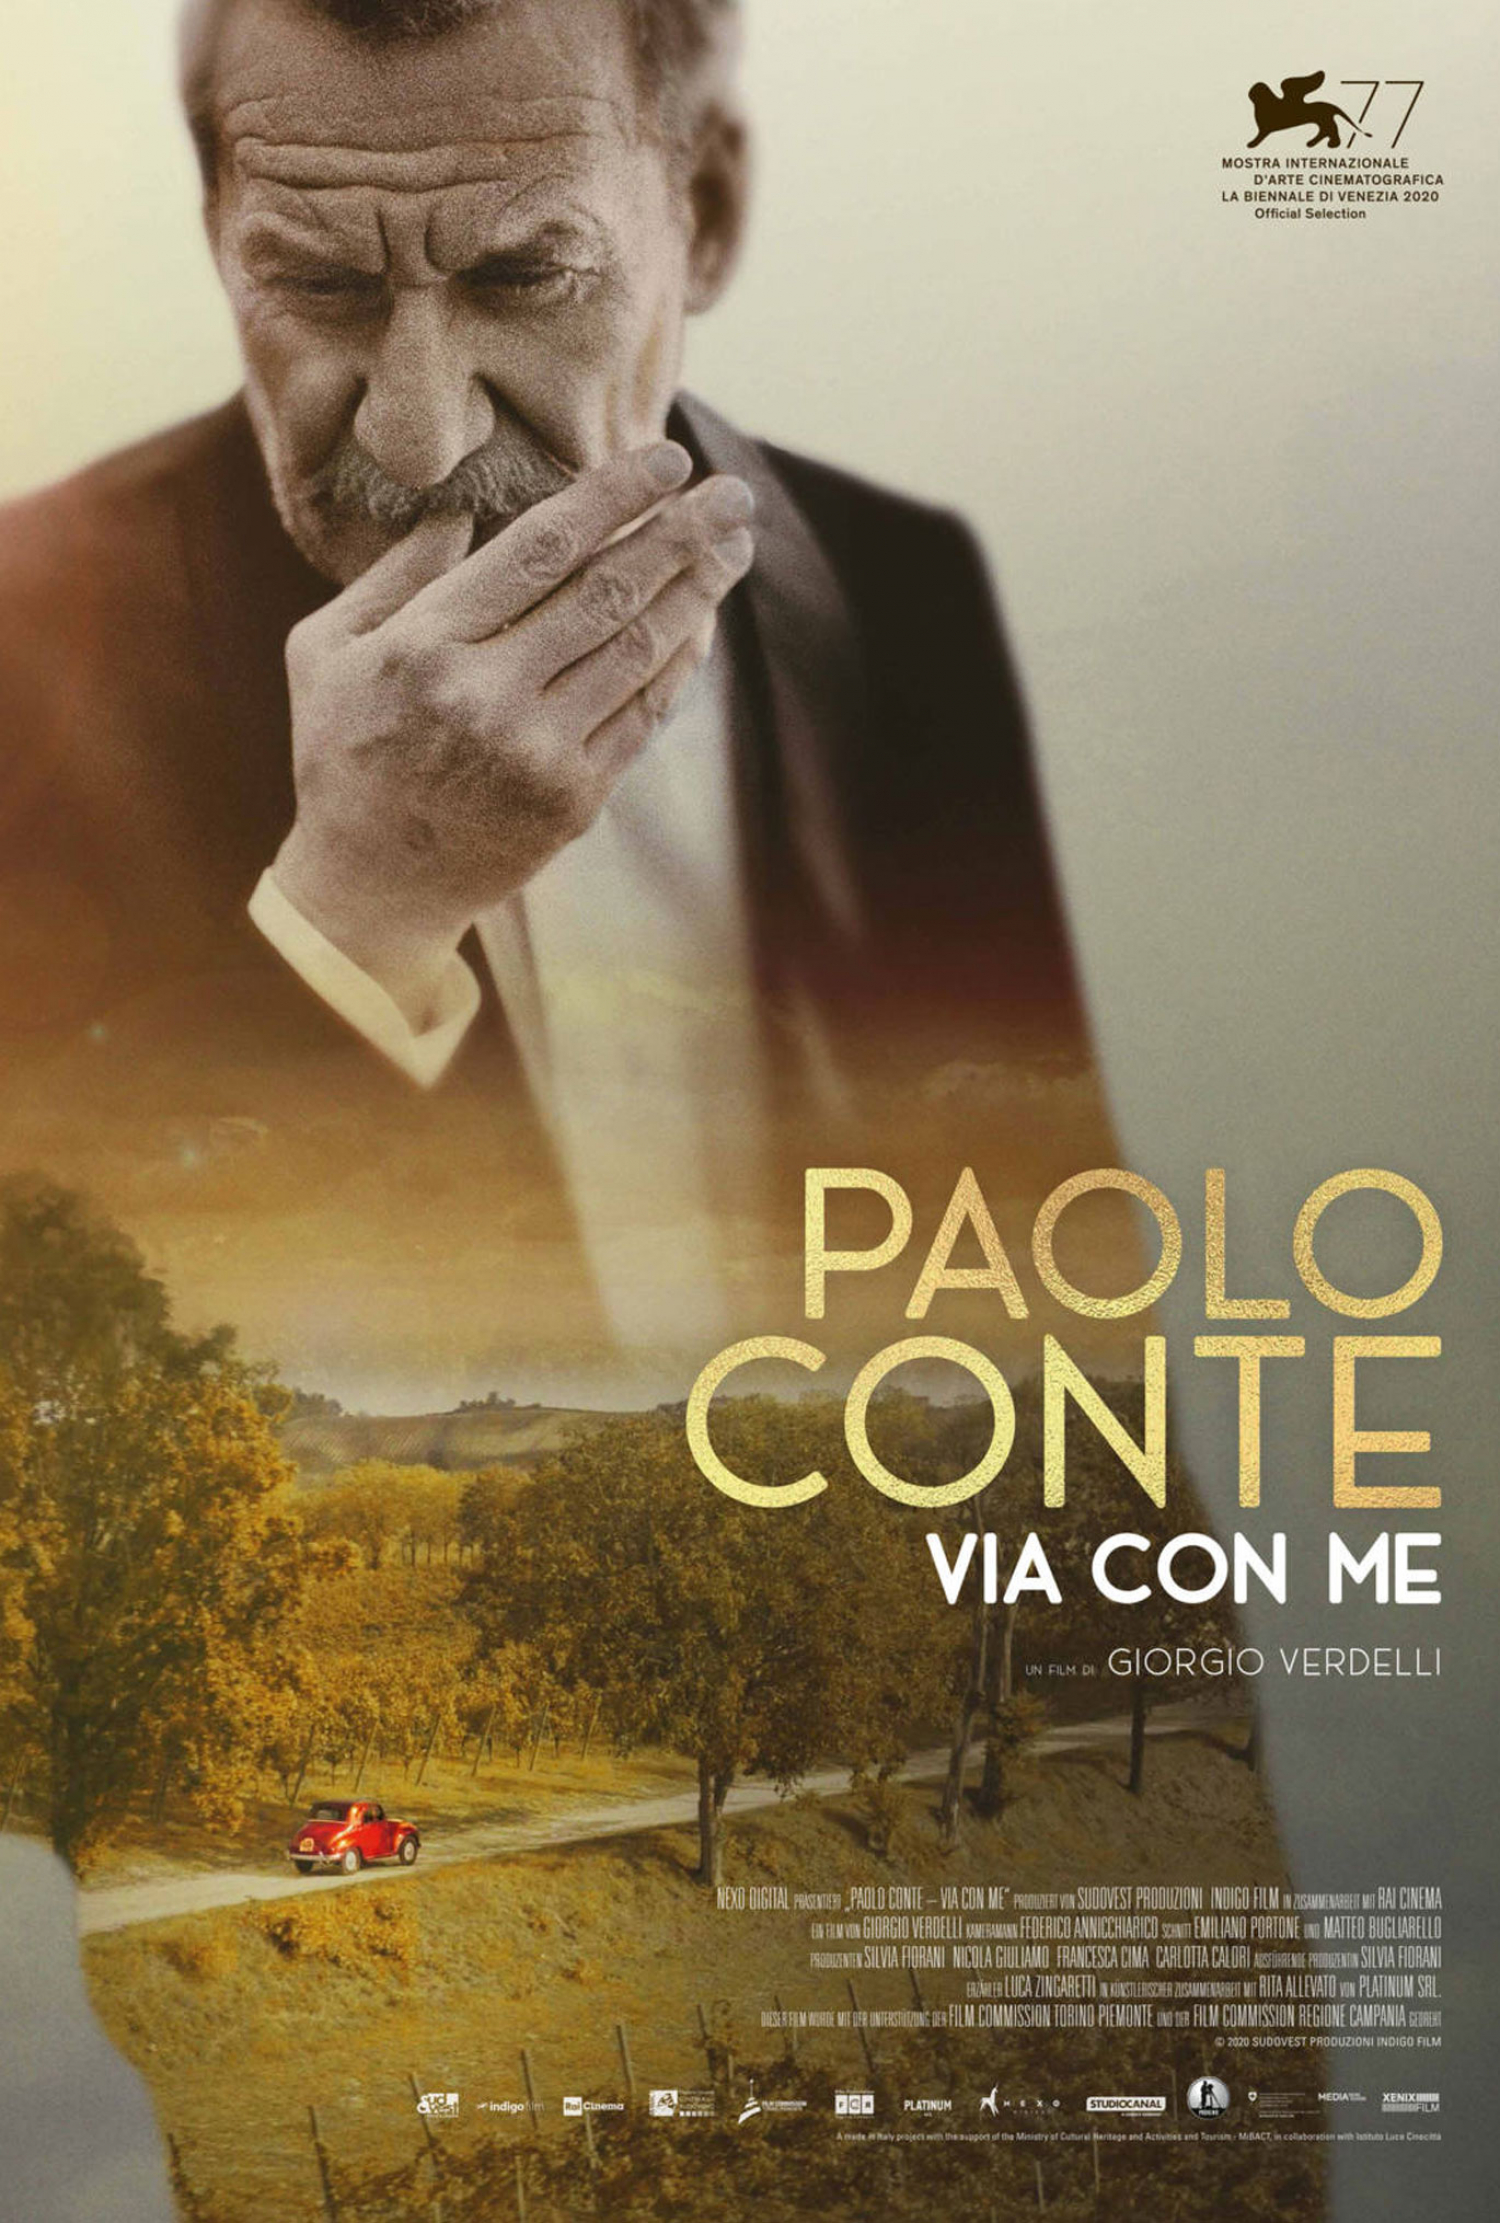 PAOLO CONTE – VIA CON ME